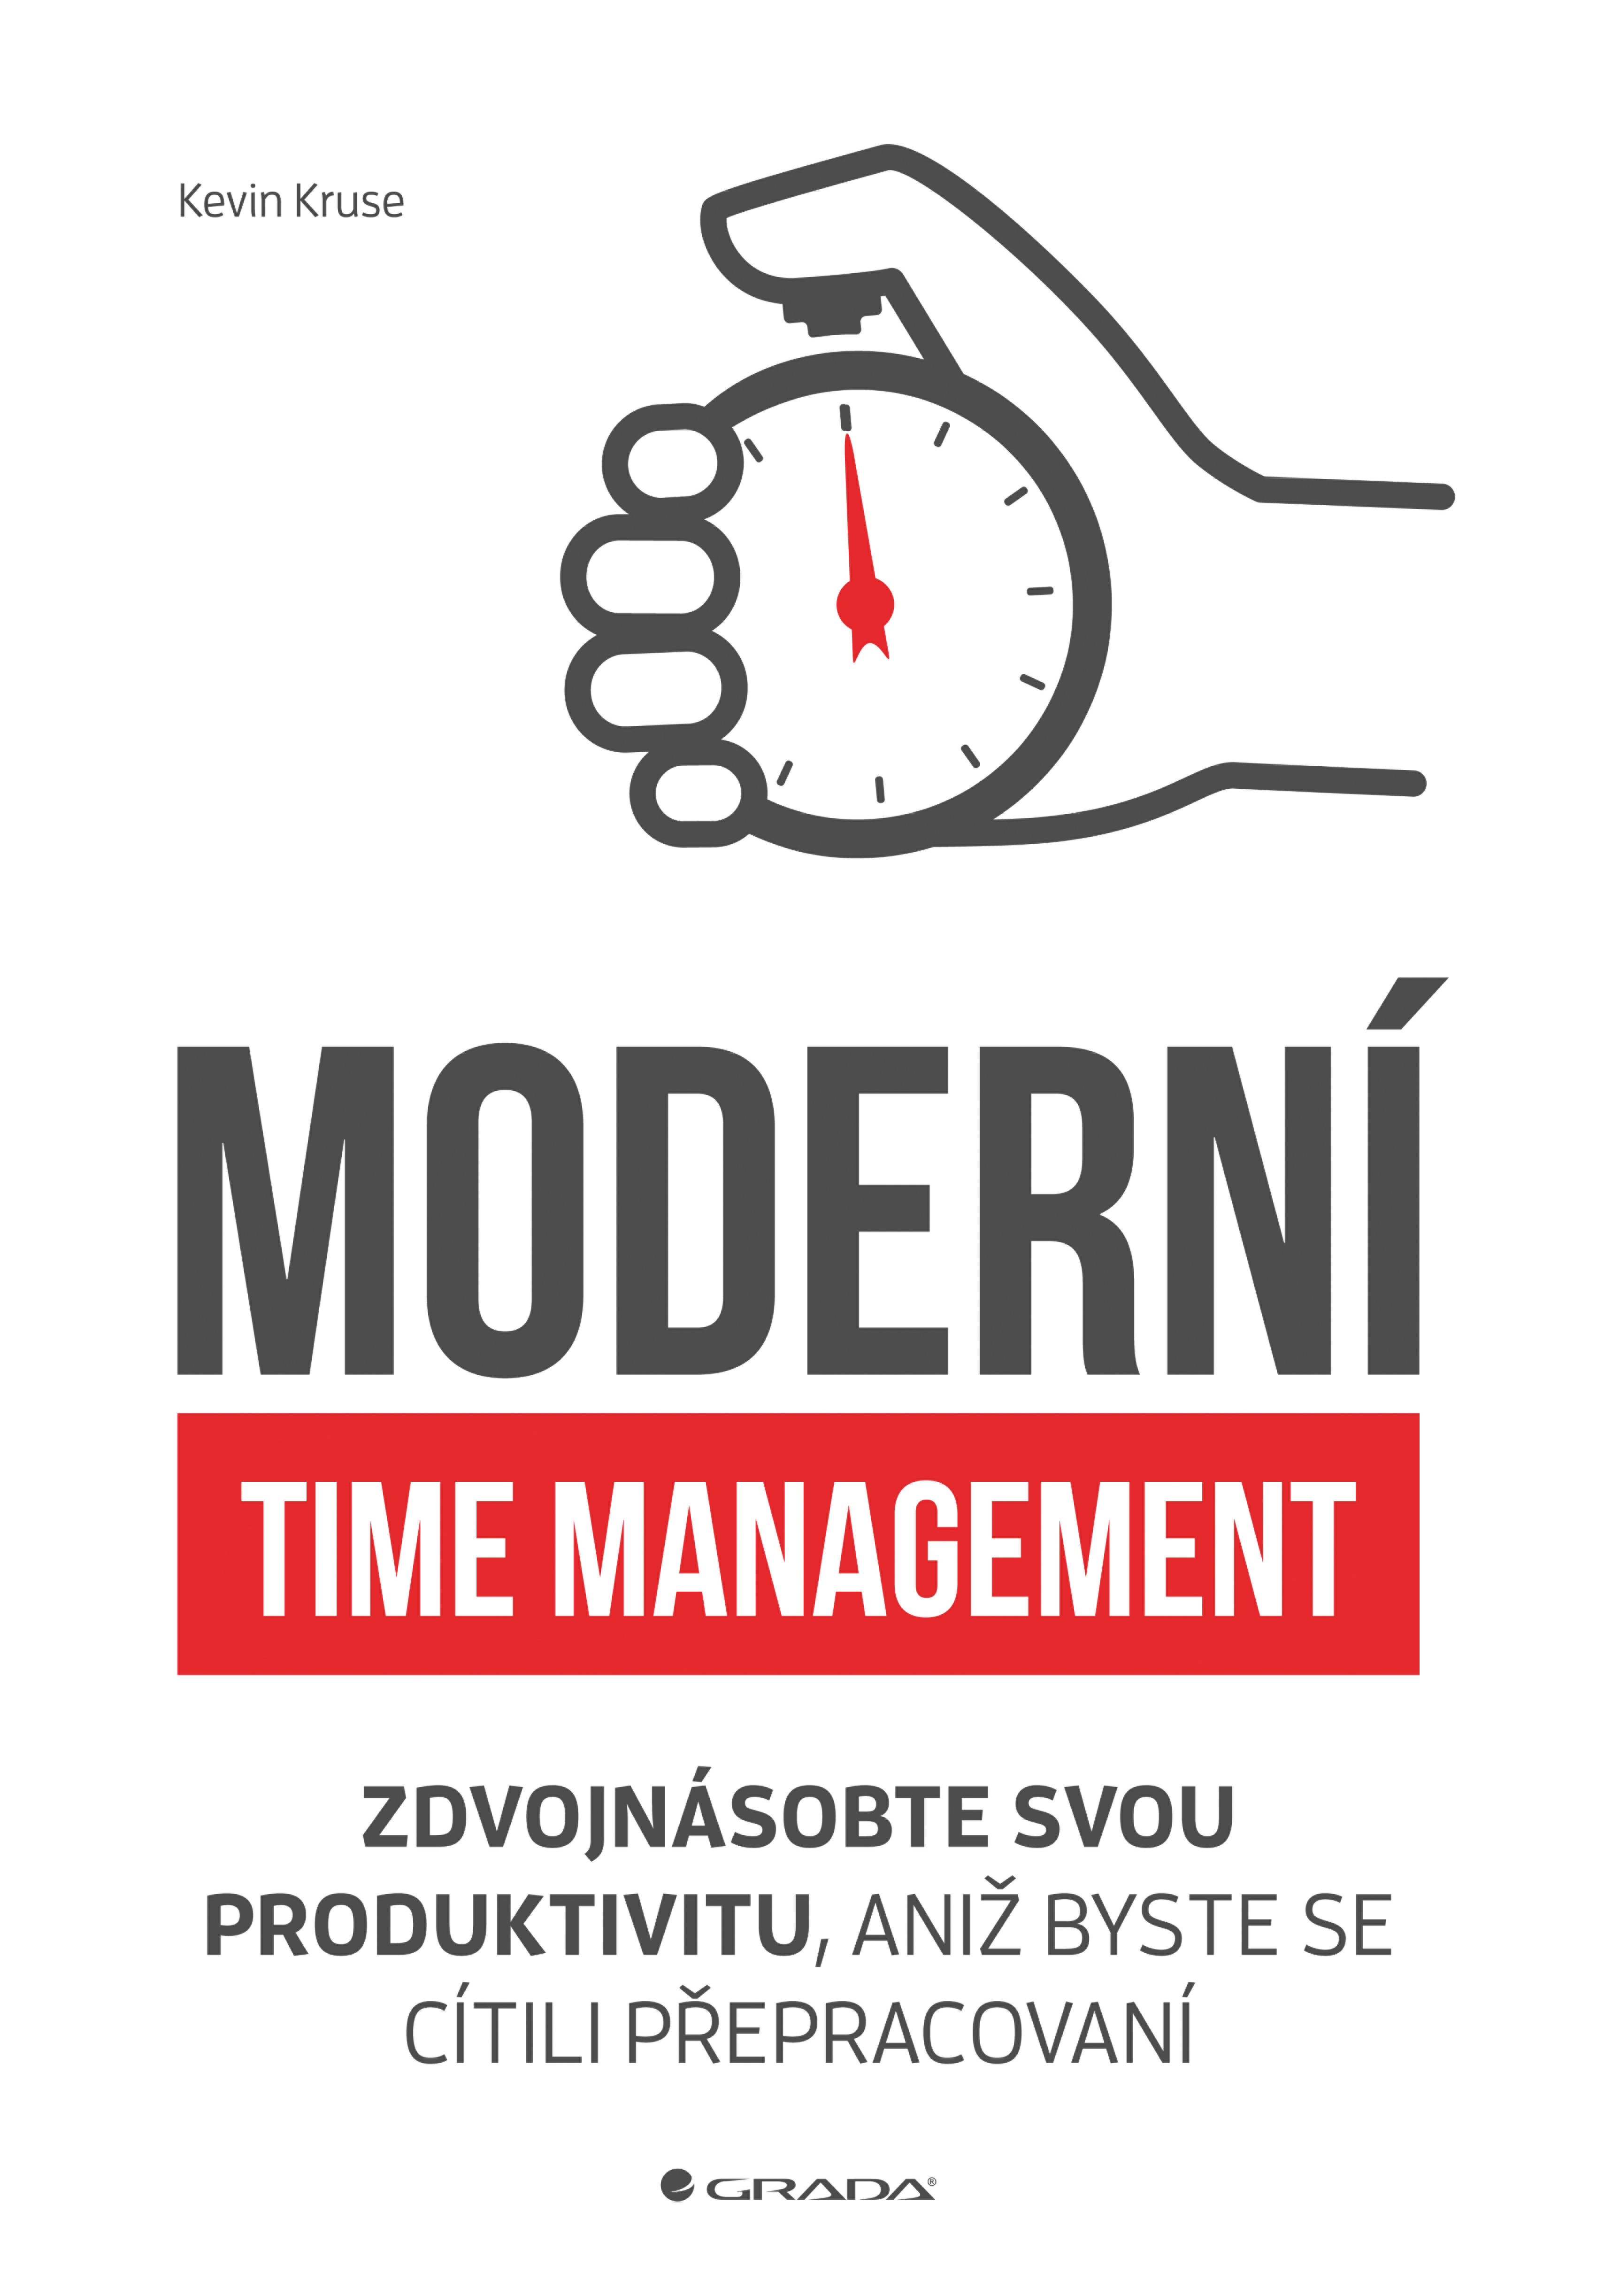 Moderní time management, Zdvojnásobte svou produktivitu, aniž byste se cítili přepracovaní